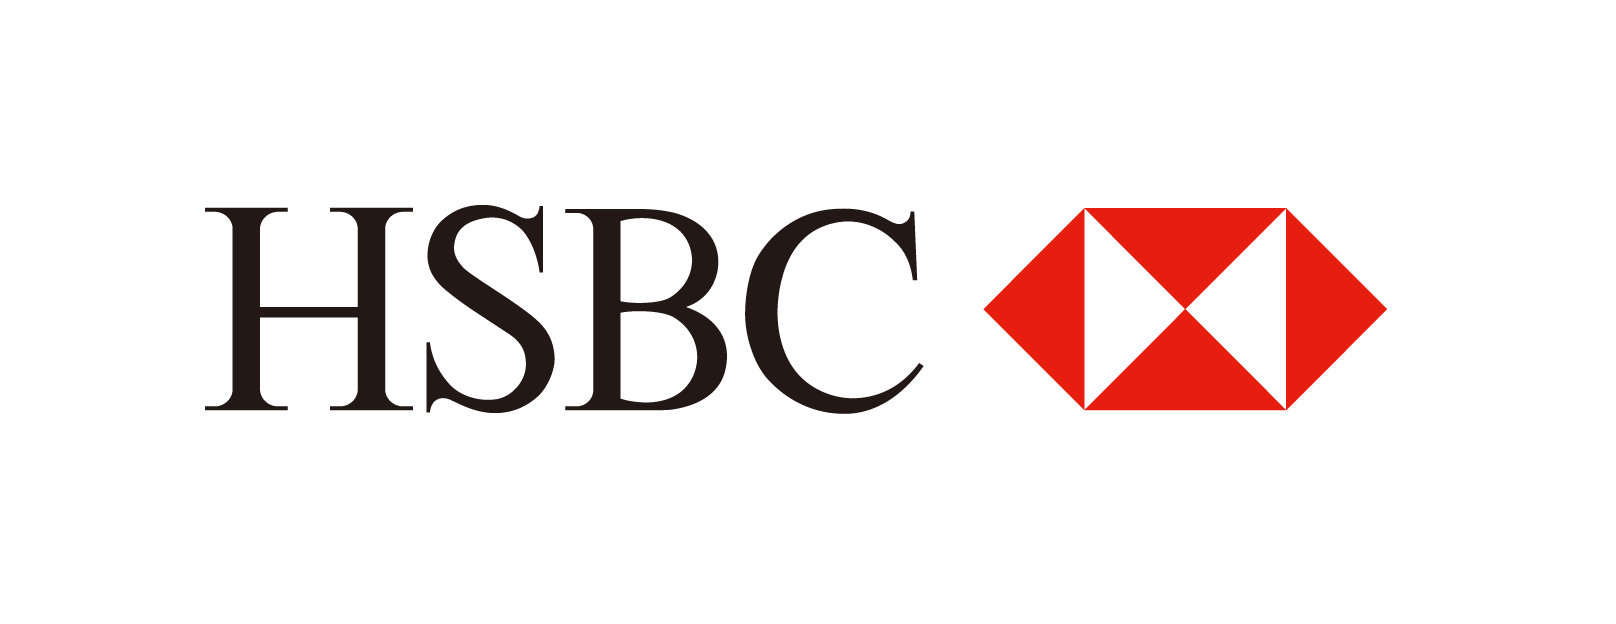 HSBC_Logo.jpg